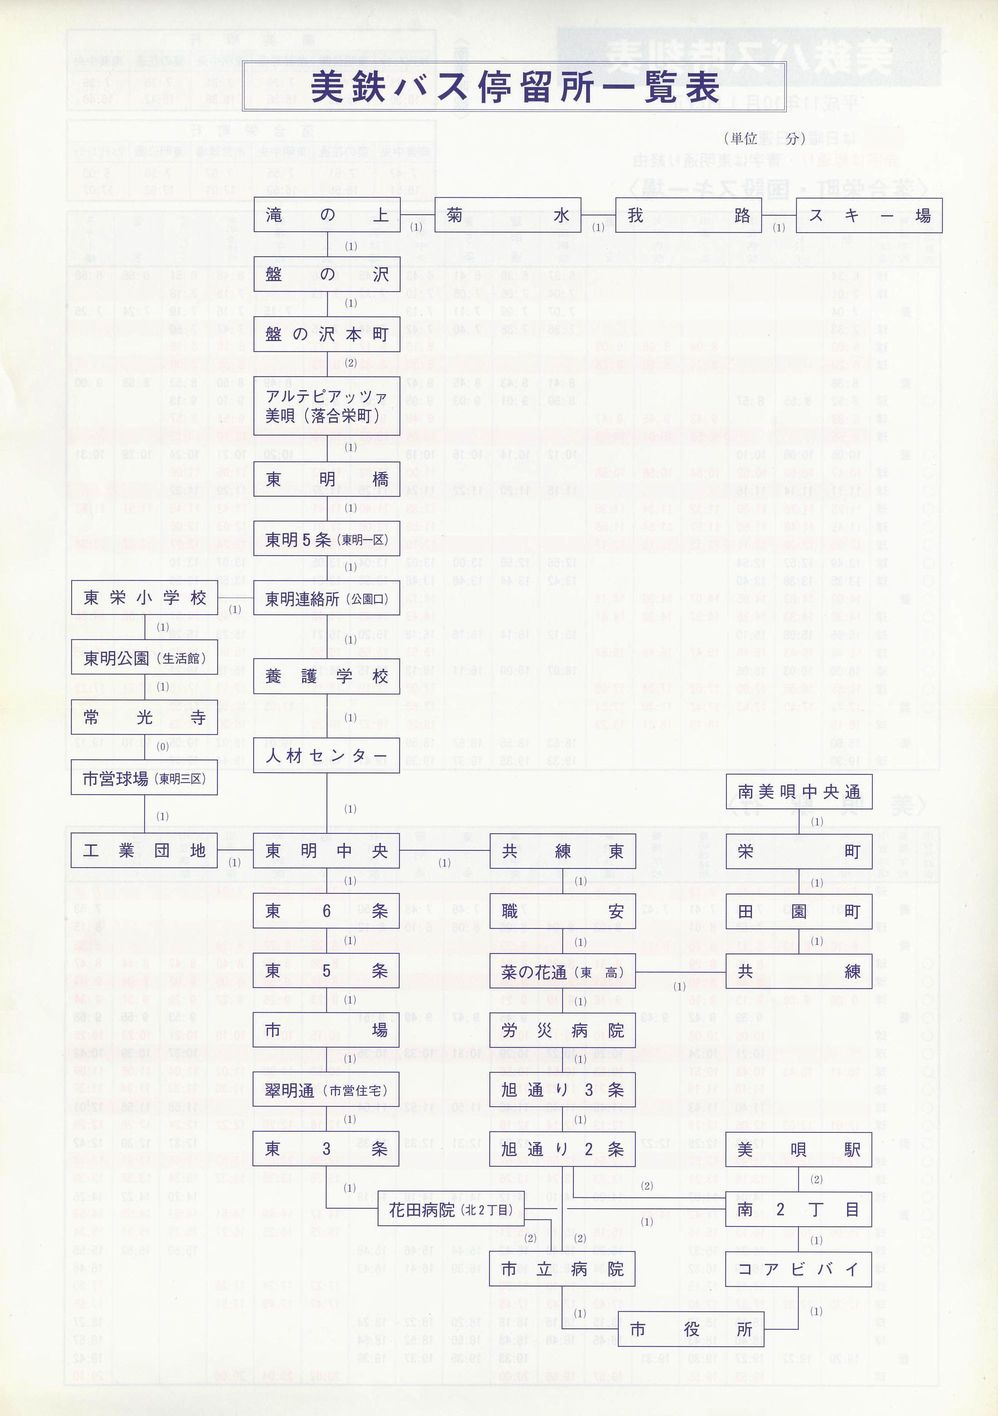 1999-10-01改正_美鉄バス_(美唄地区)時刻表裏面